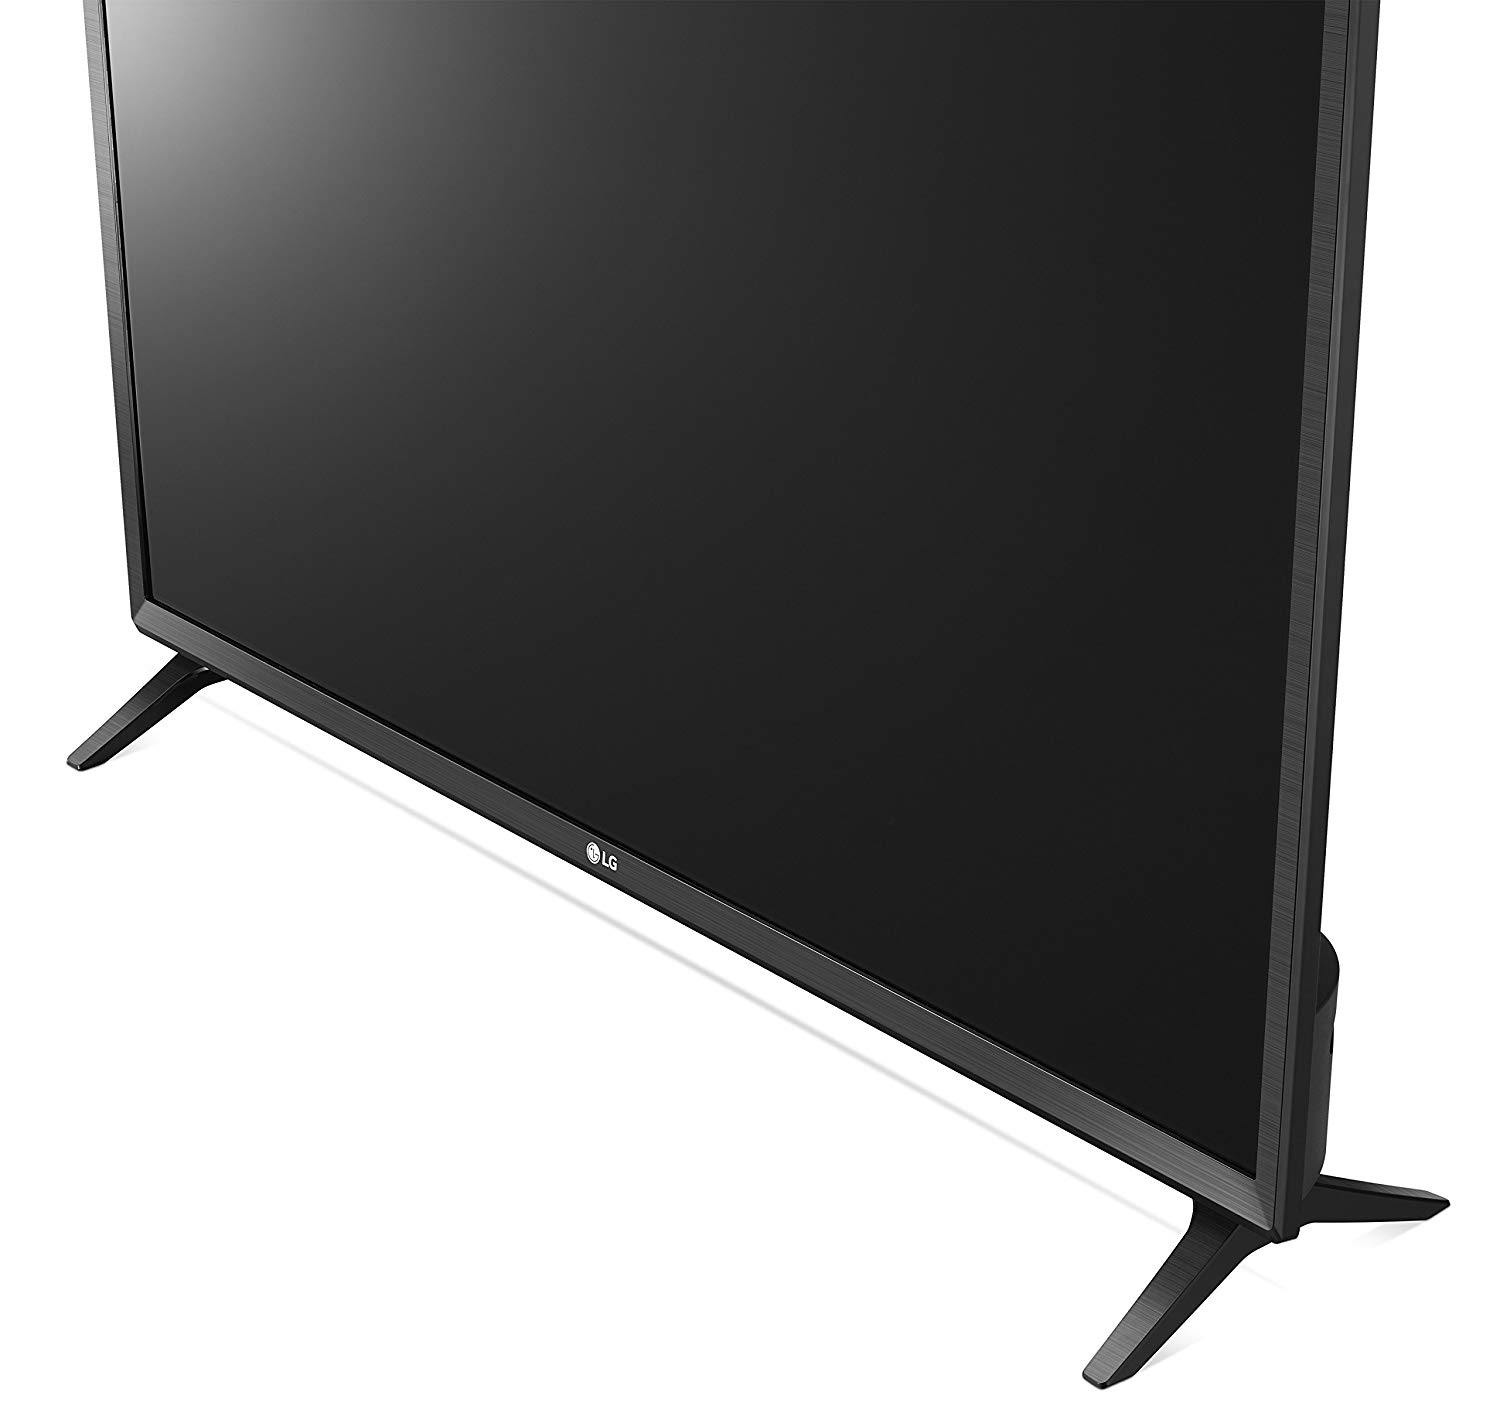 Lg Electronics Lk Bpua Inch P Smart Led Tv Model Big